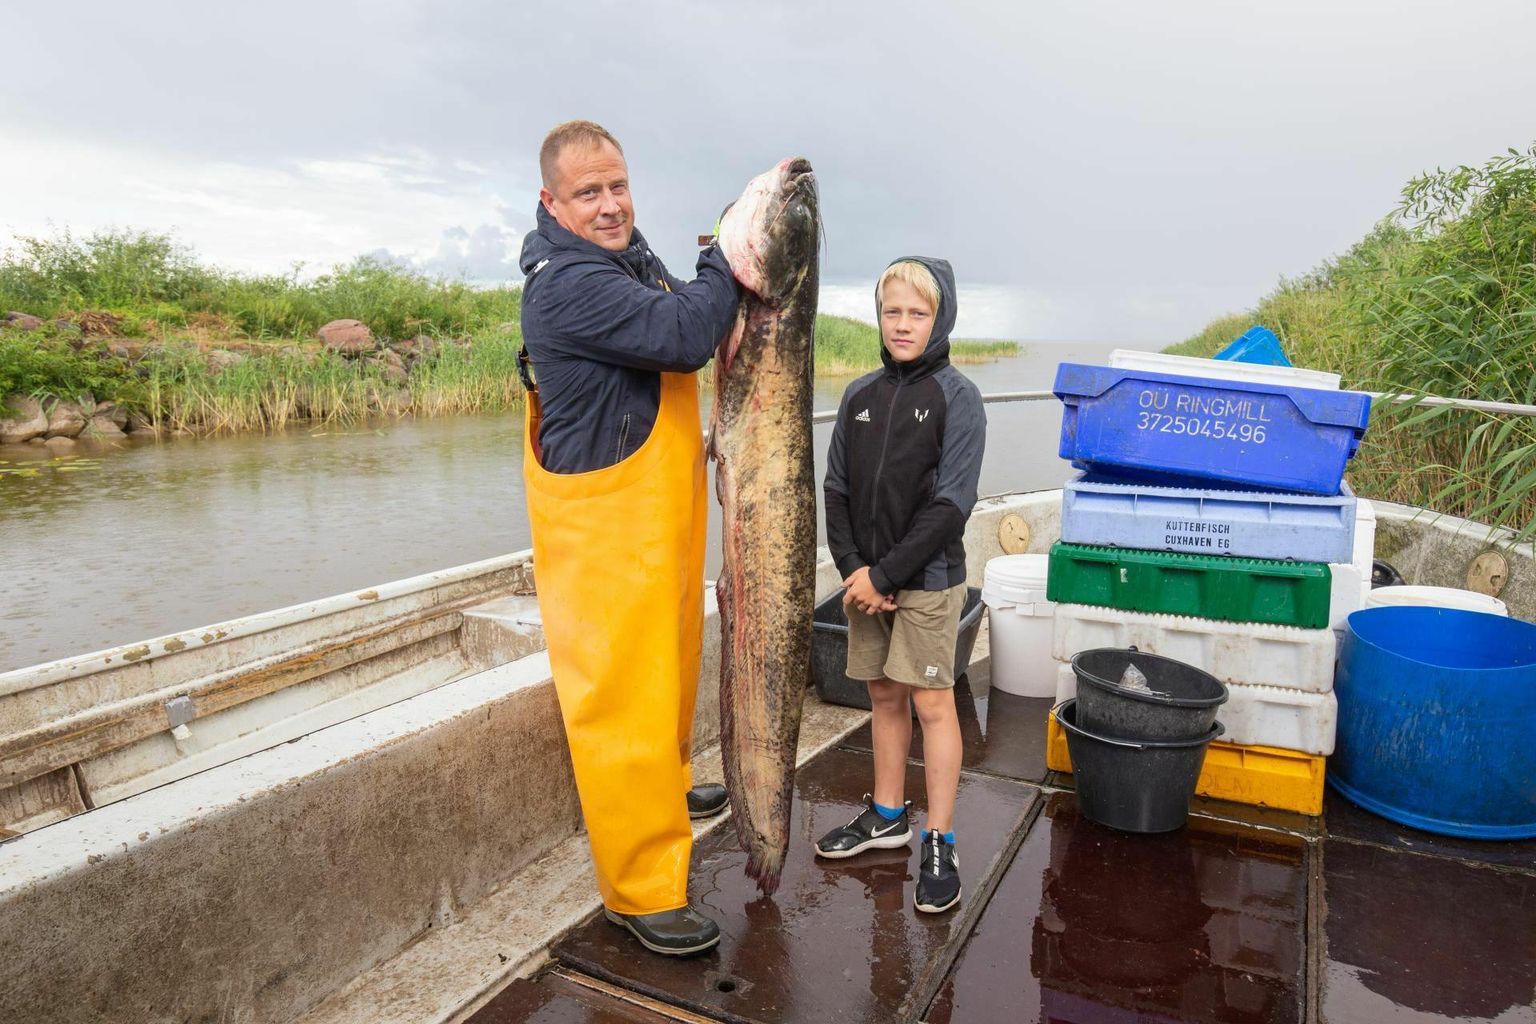 Самцу сома, найденному в нескольких километрах от порта Валма, было около 15 лет, и он весил 28 кг. На снимке Юлар Кони со своим сыном Марком-Маркусом.